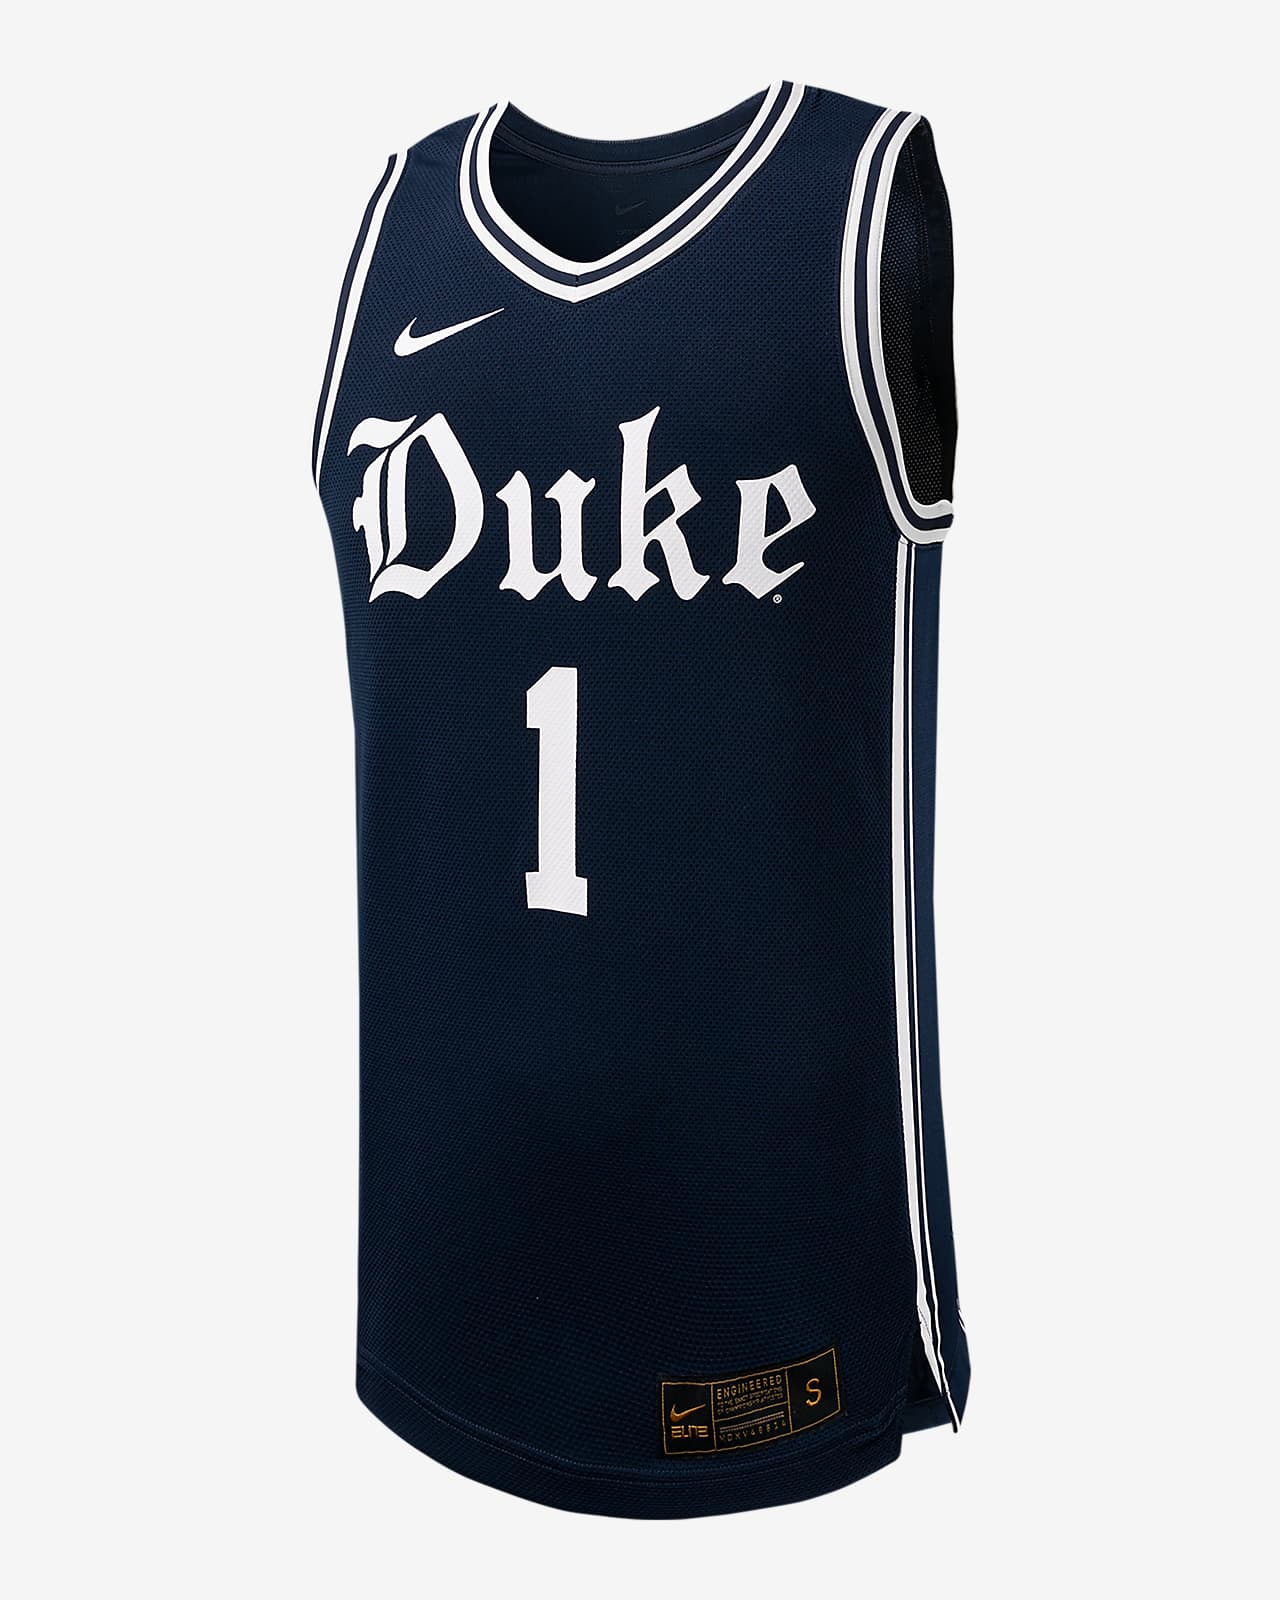 Jersey de básquetbol universitario Nike Replica para hombre Duke